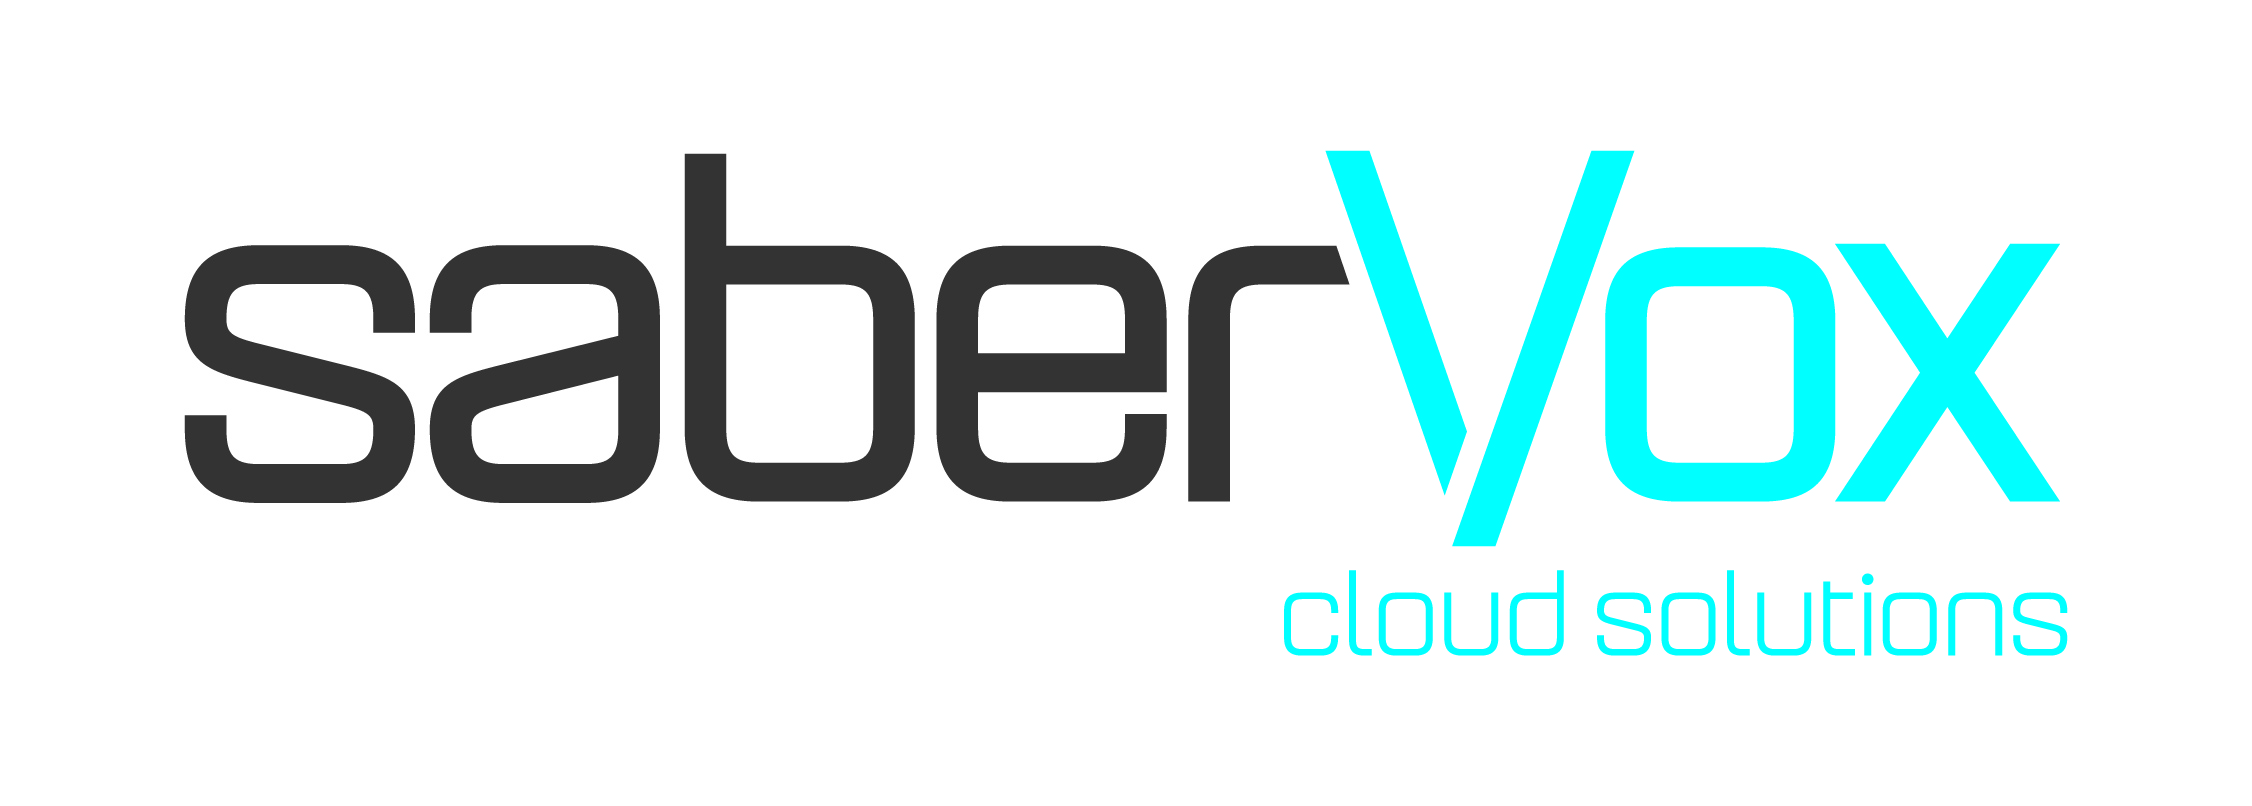 saberVox cloud solutions